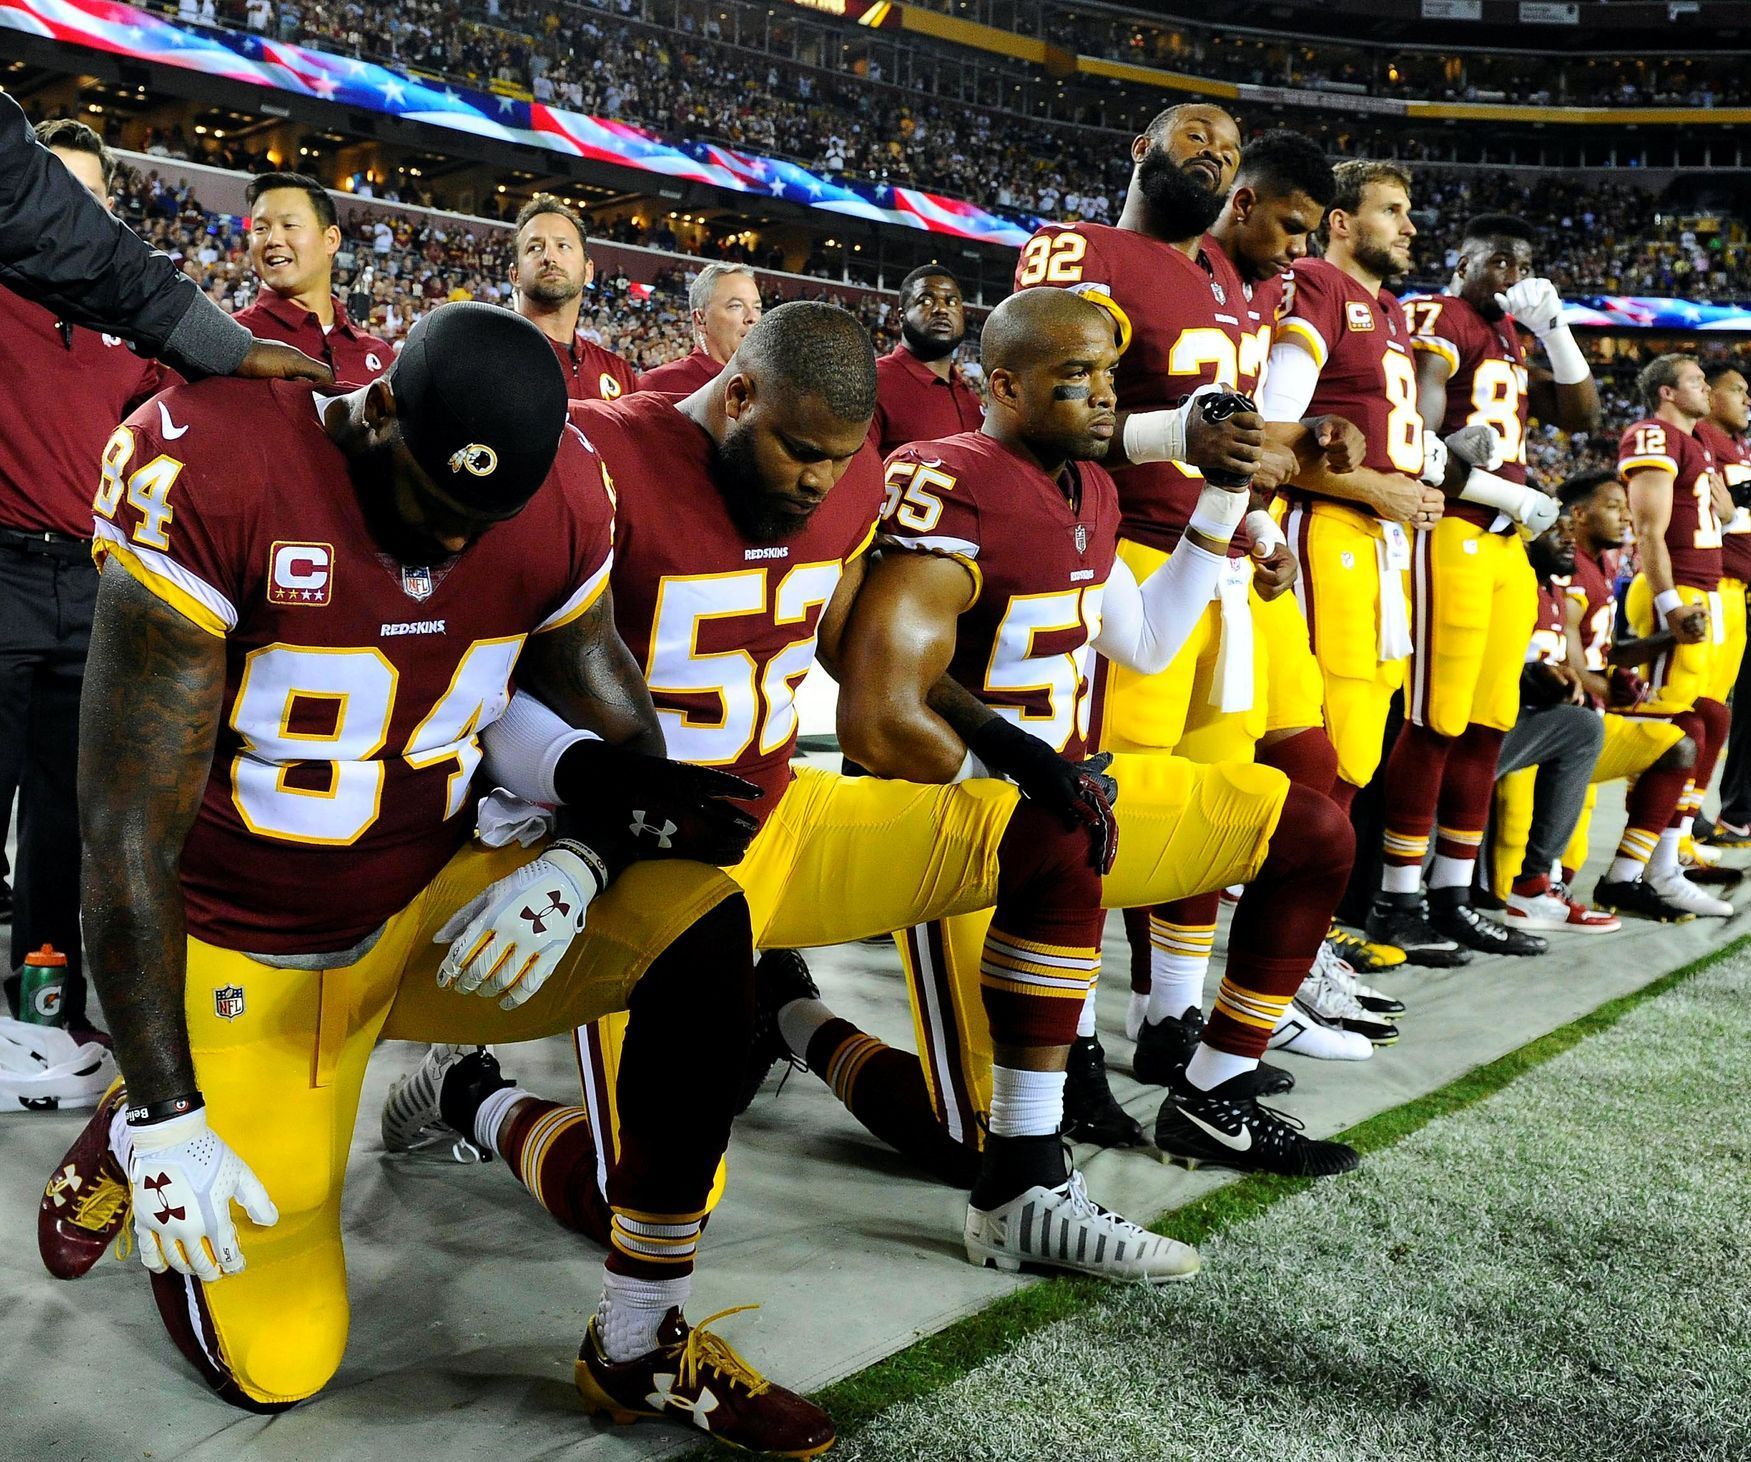 Hráči NFL klečí u US hymny